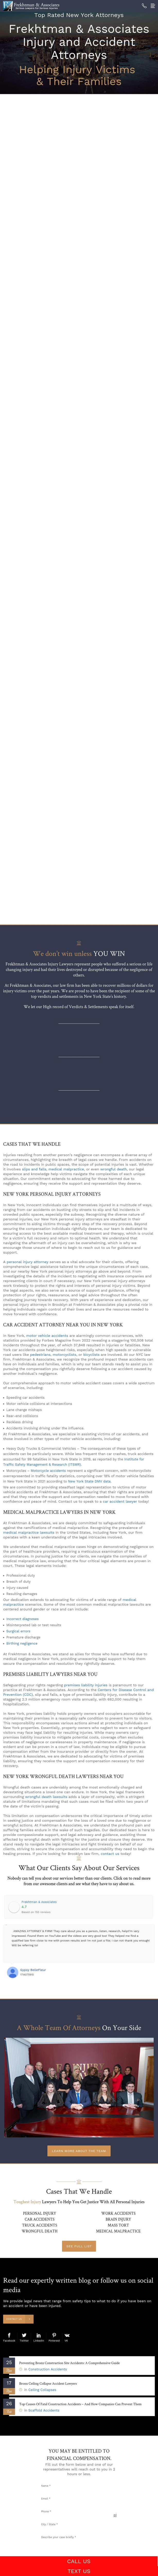 Frekhtman & Associates - Bronx NY Lawyers